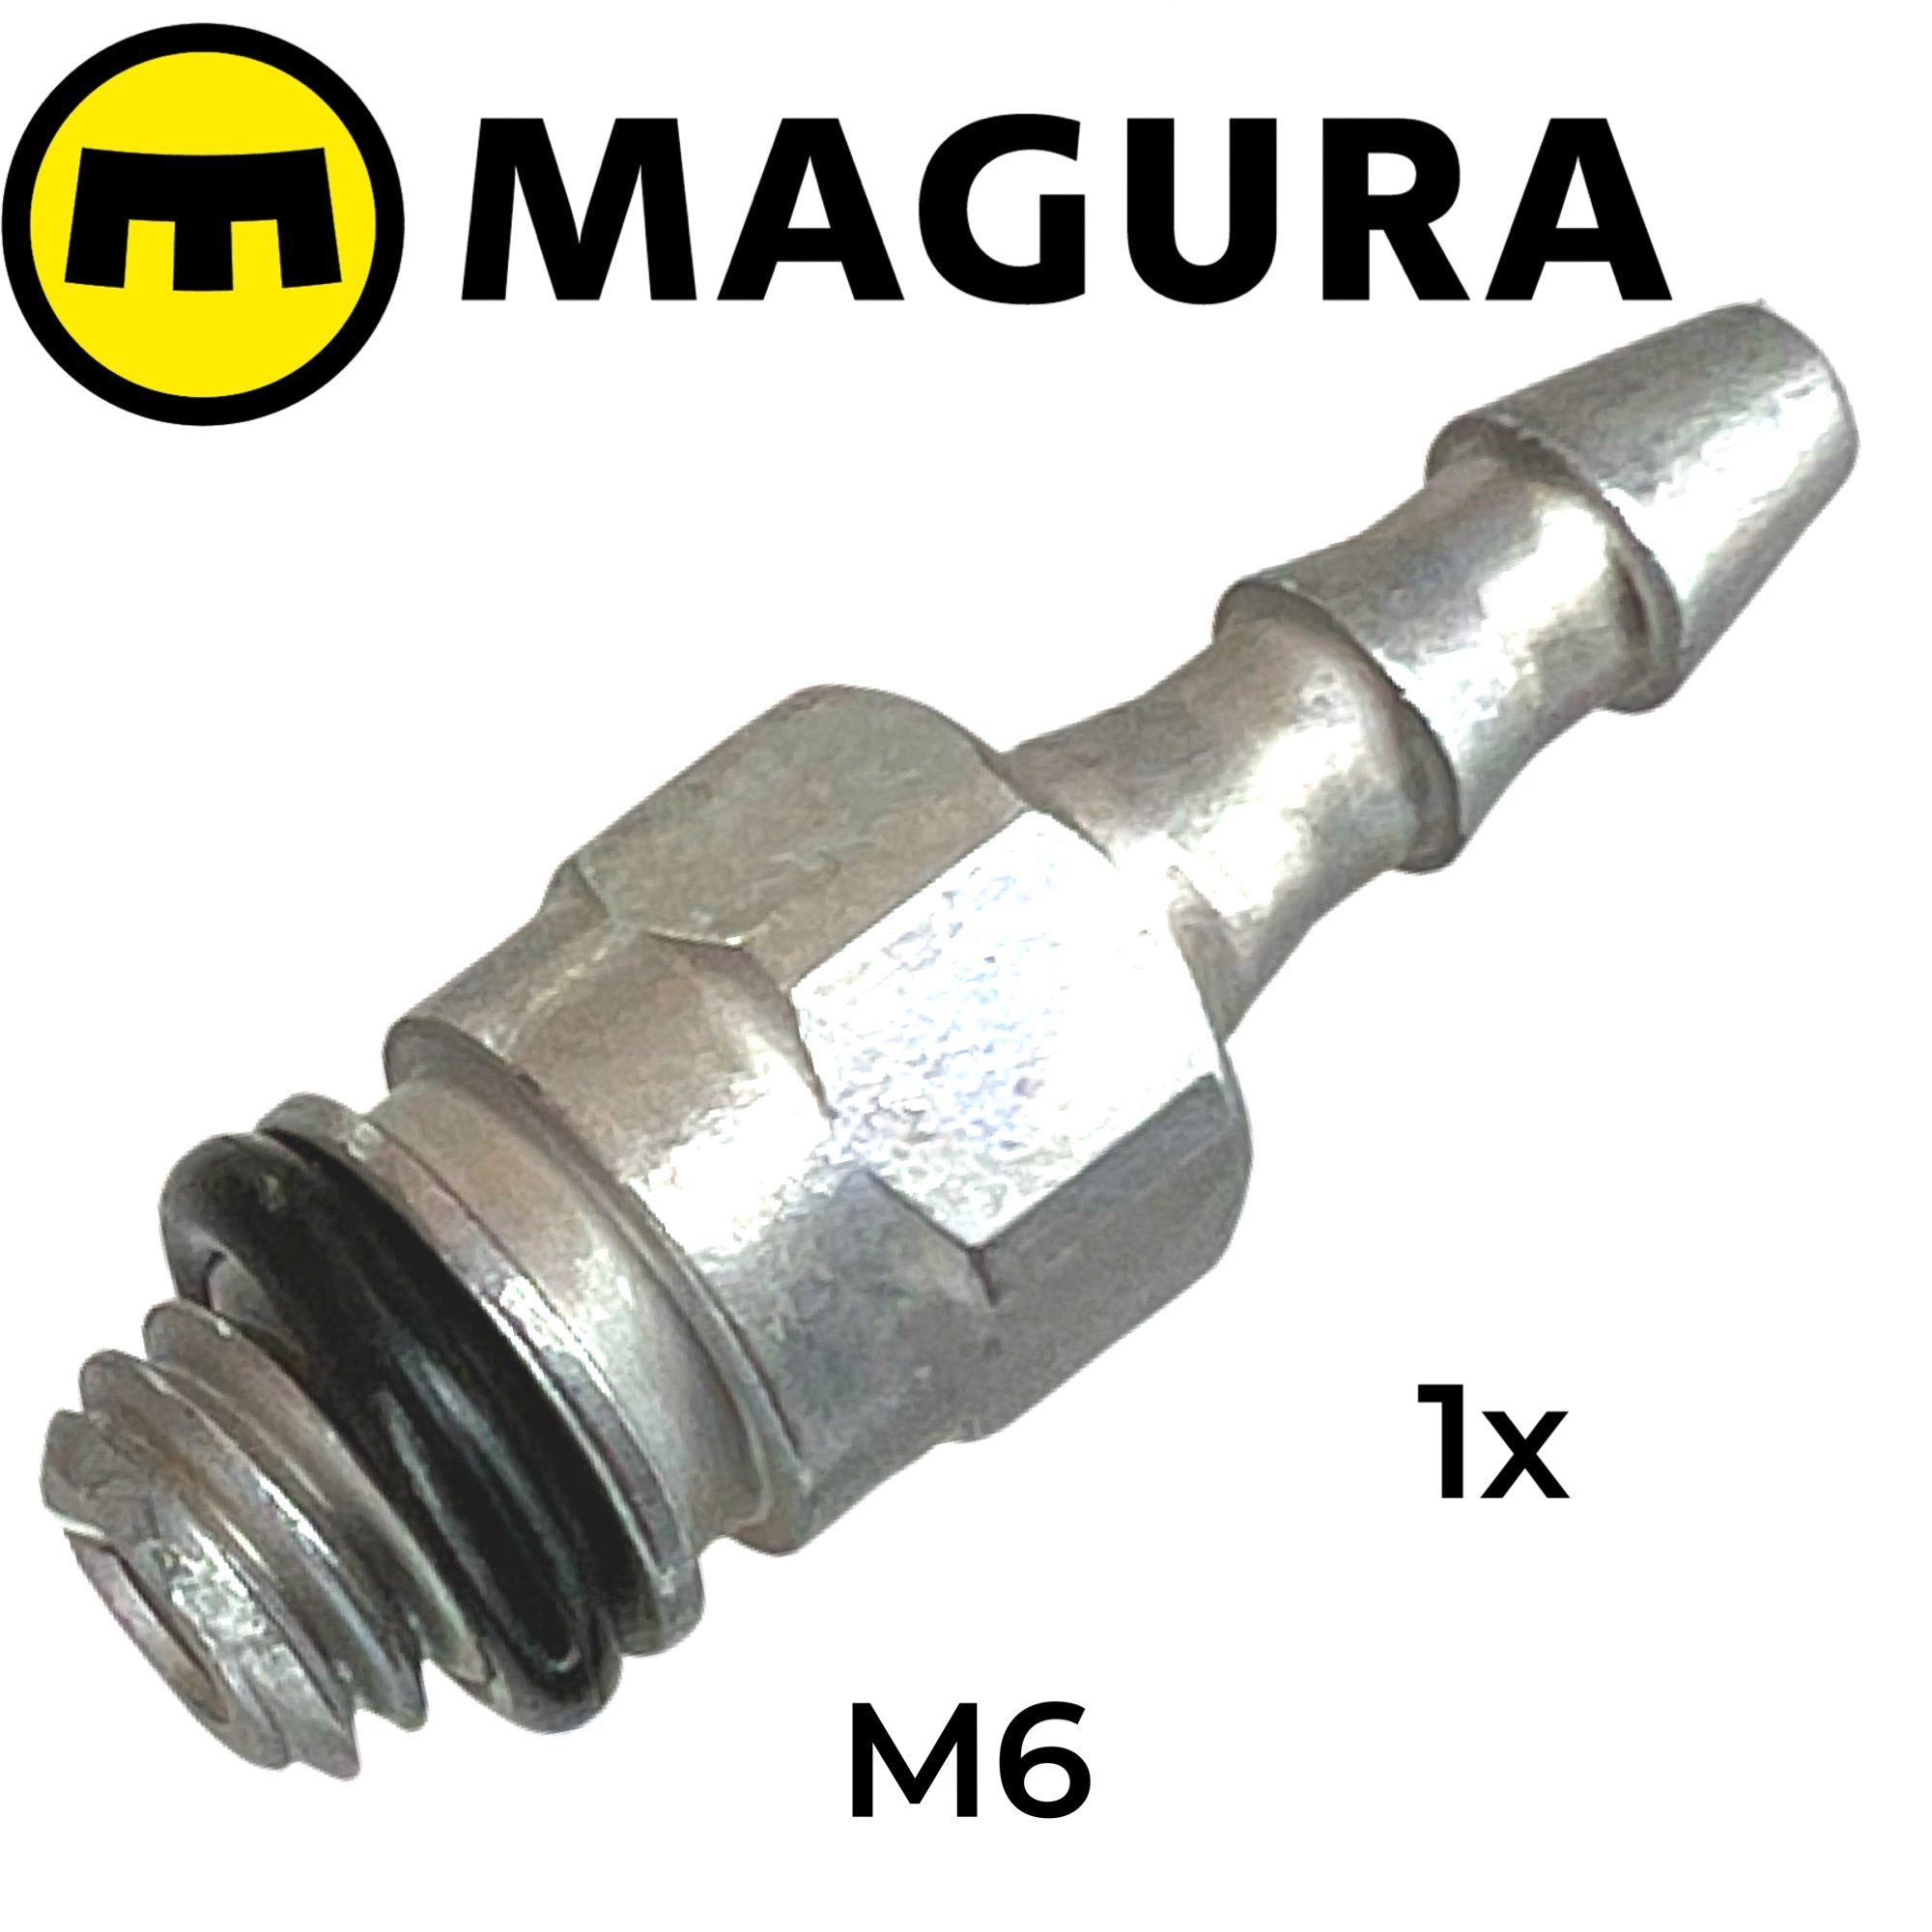 Magura Felgenbremse M6 1x Fitting Service Magura O-Ring Entlüftungsanschluss Befüllstutzen